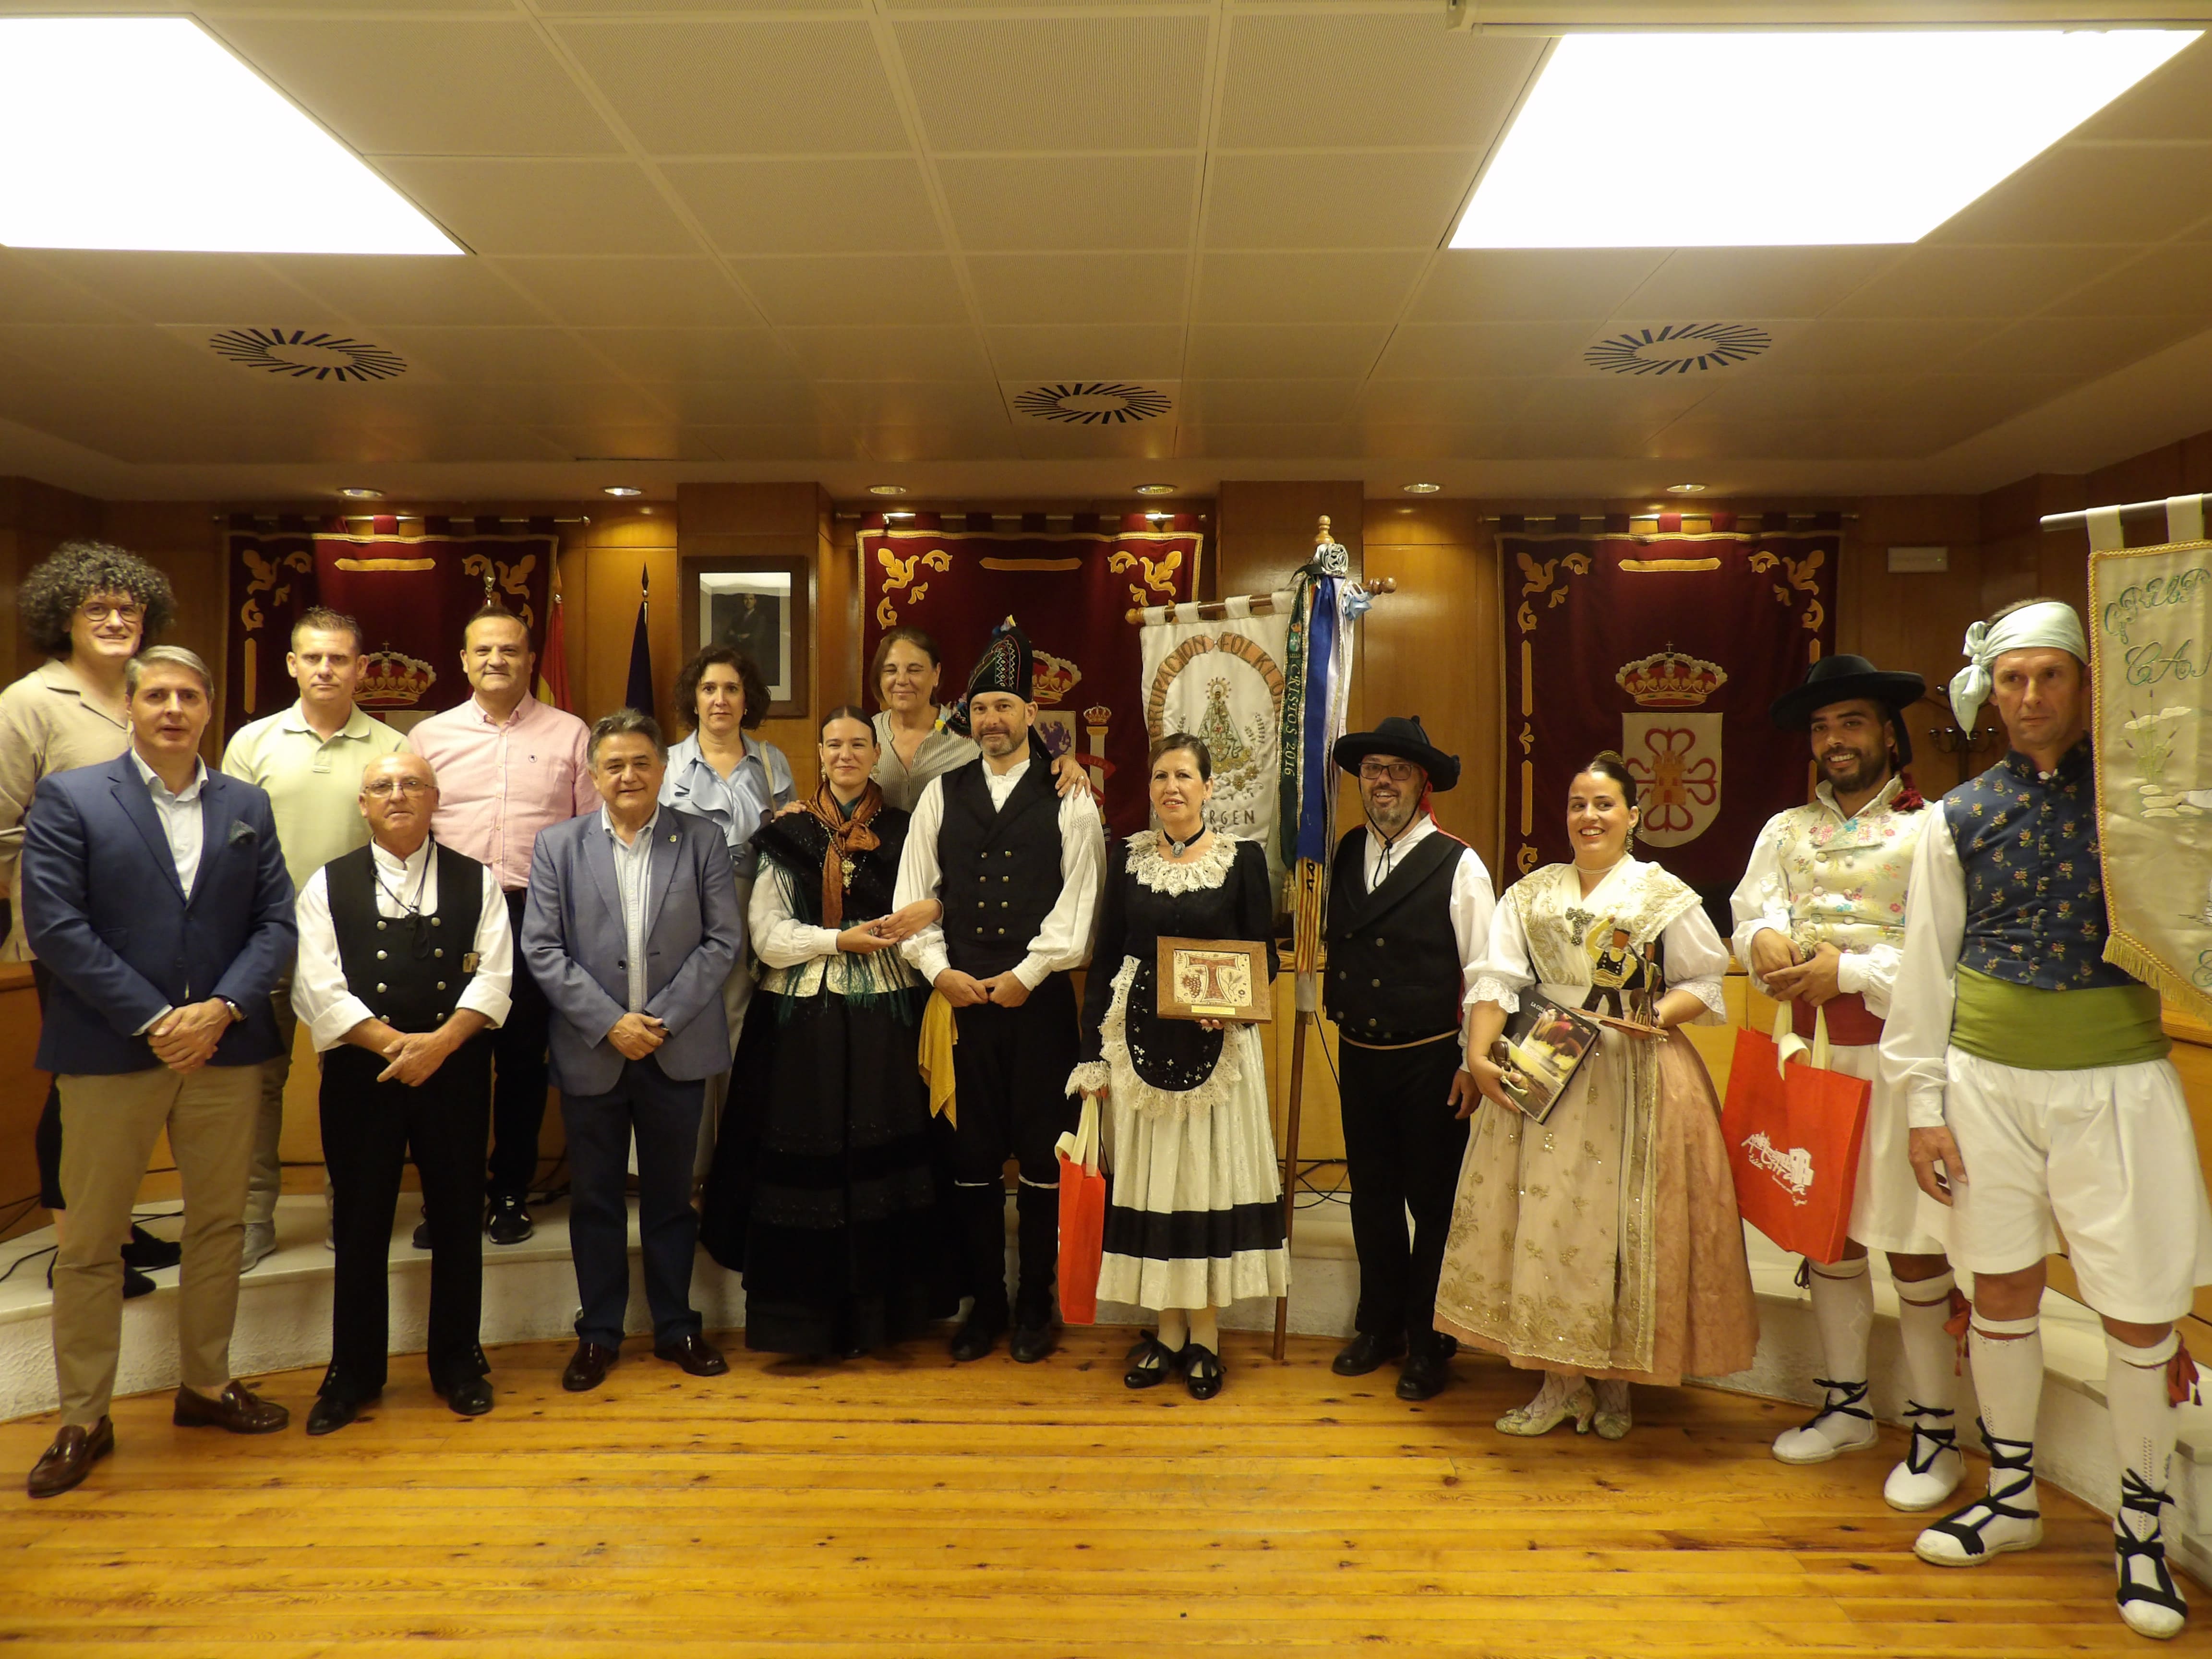 MIembros de las distintas asociaciones folklóricas junto a miembros del gobierno local